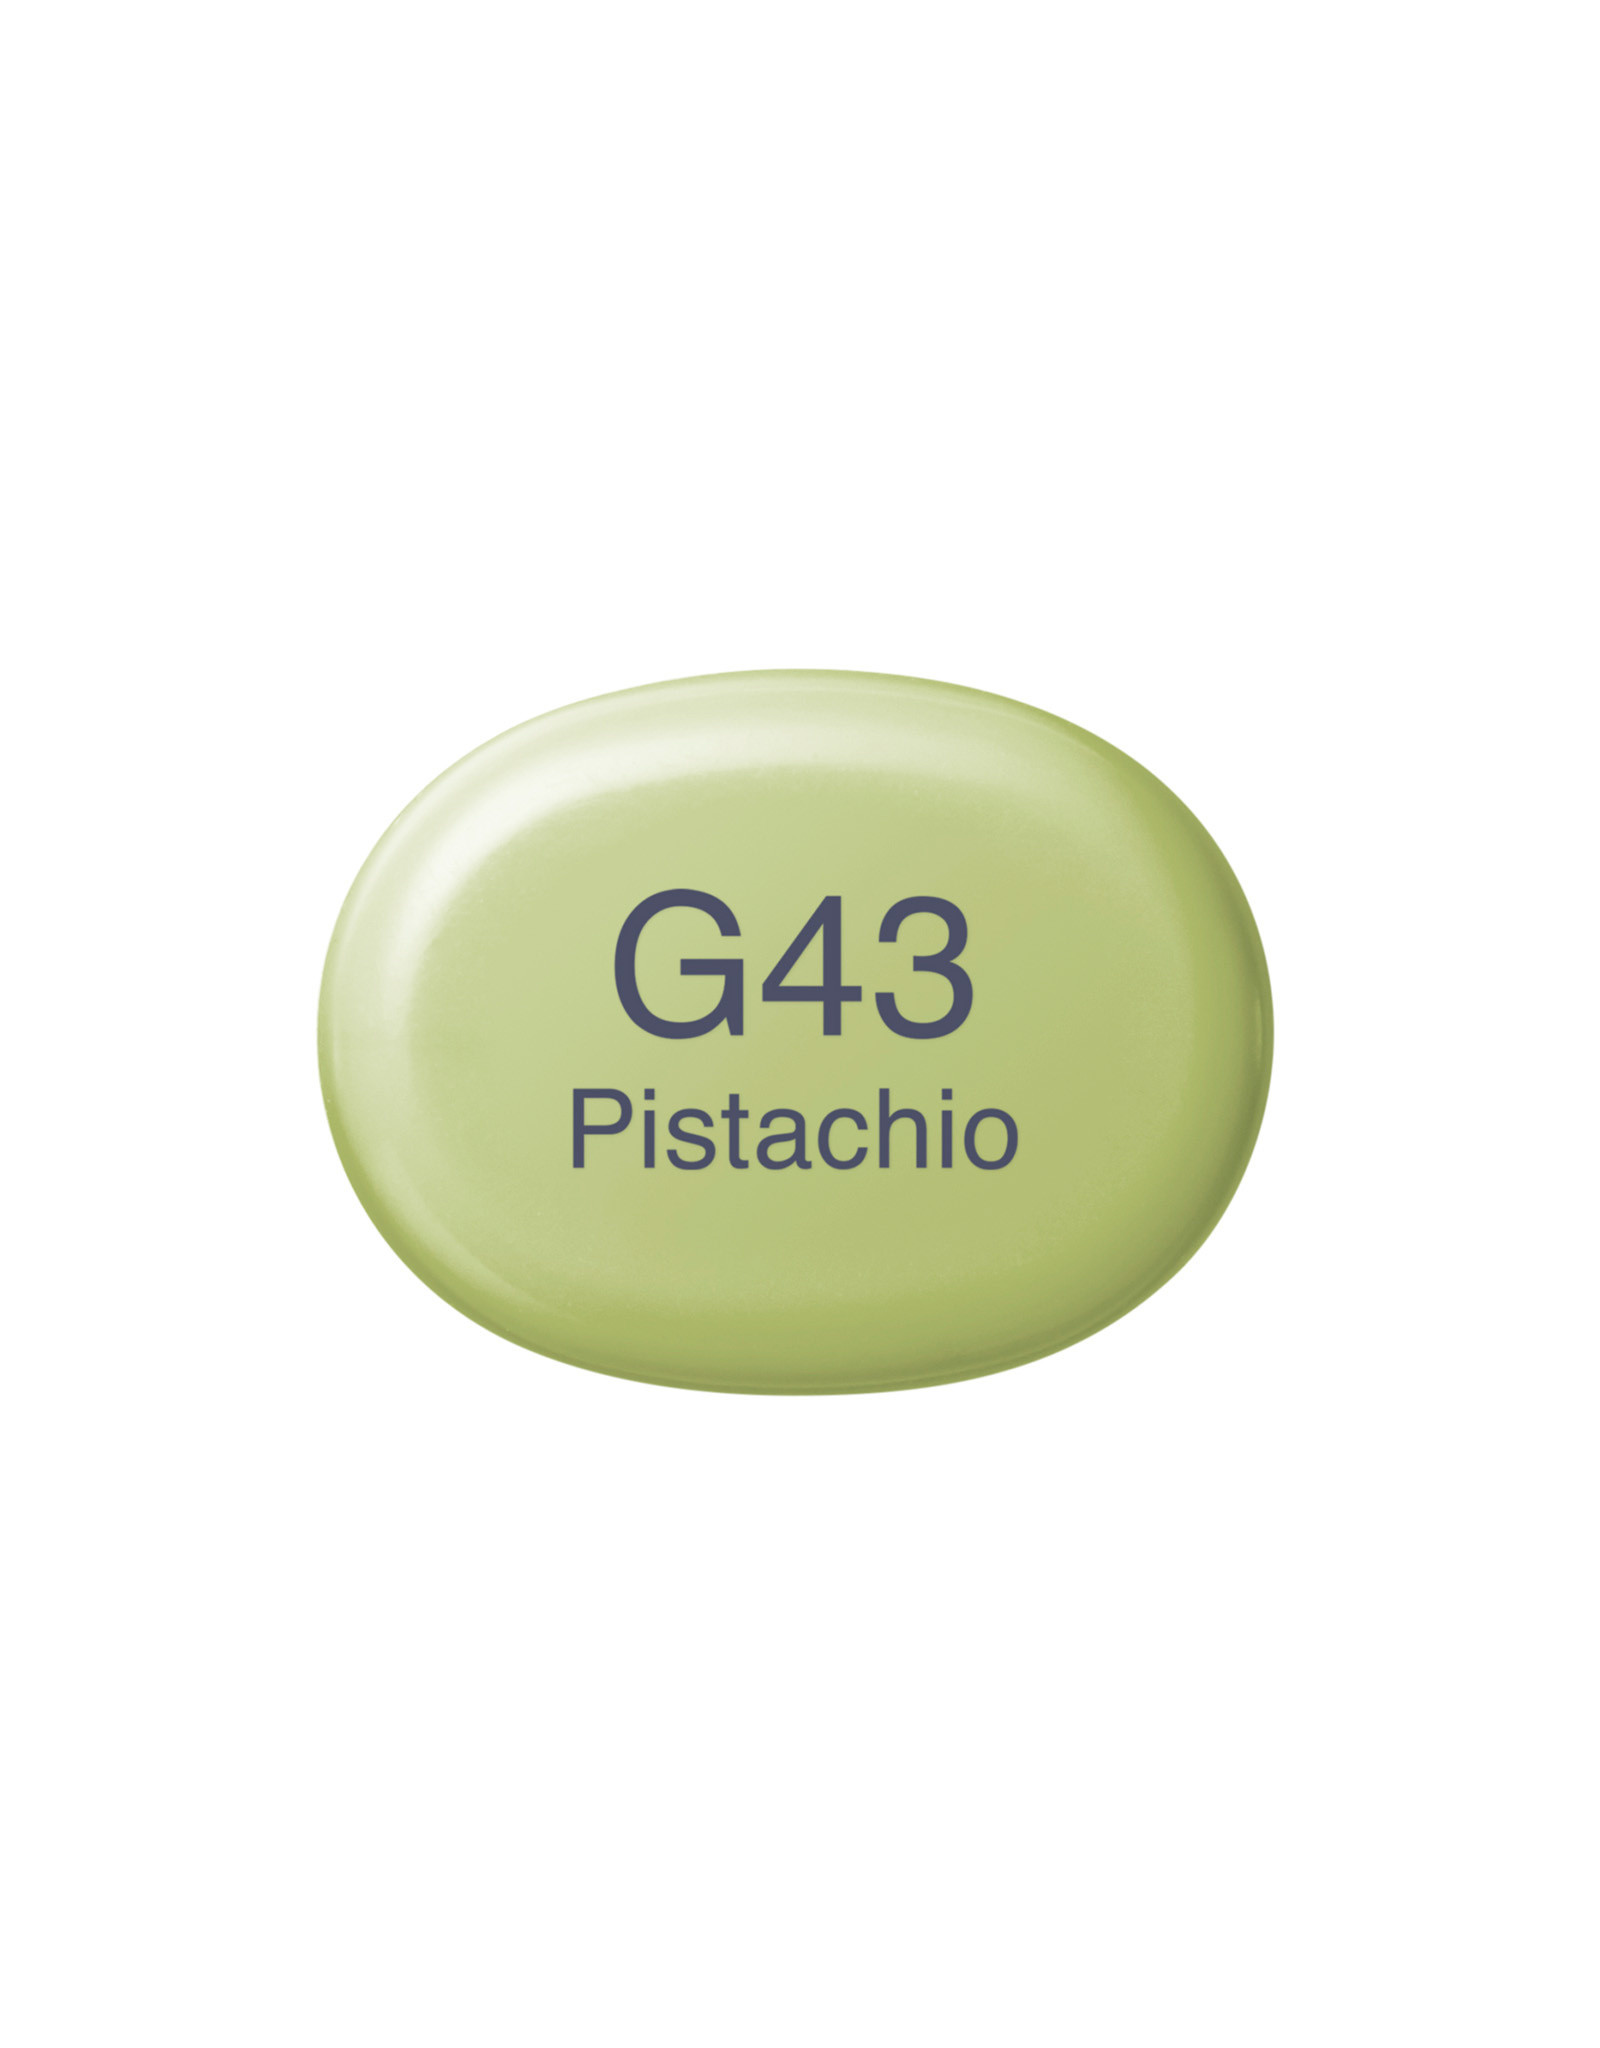 COPIC COPIC Sketch Marker G43 Pistachio